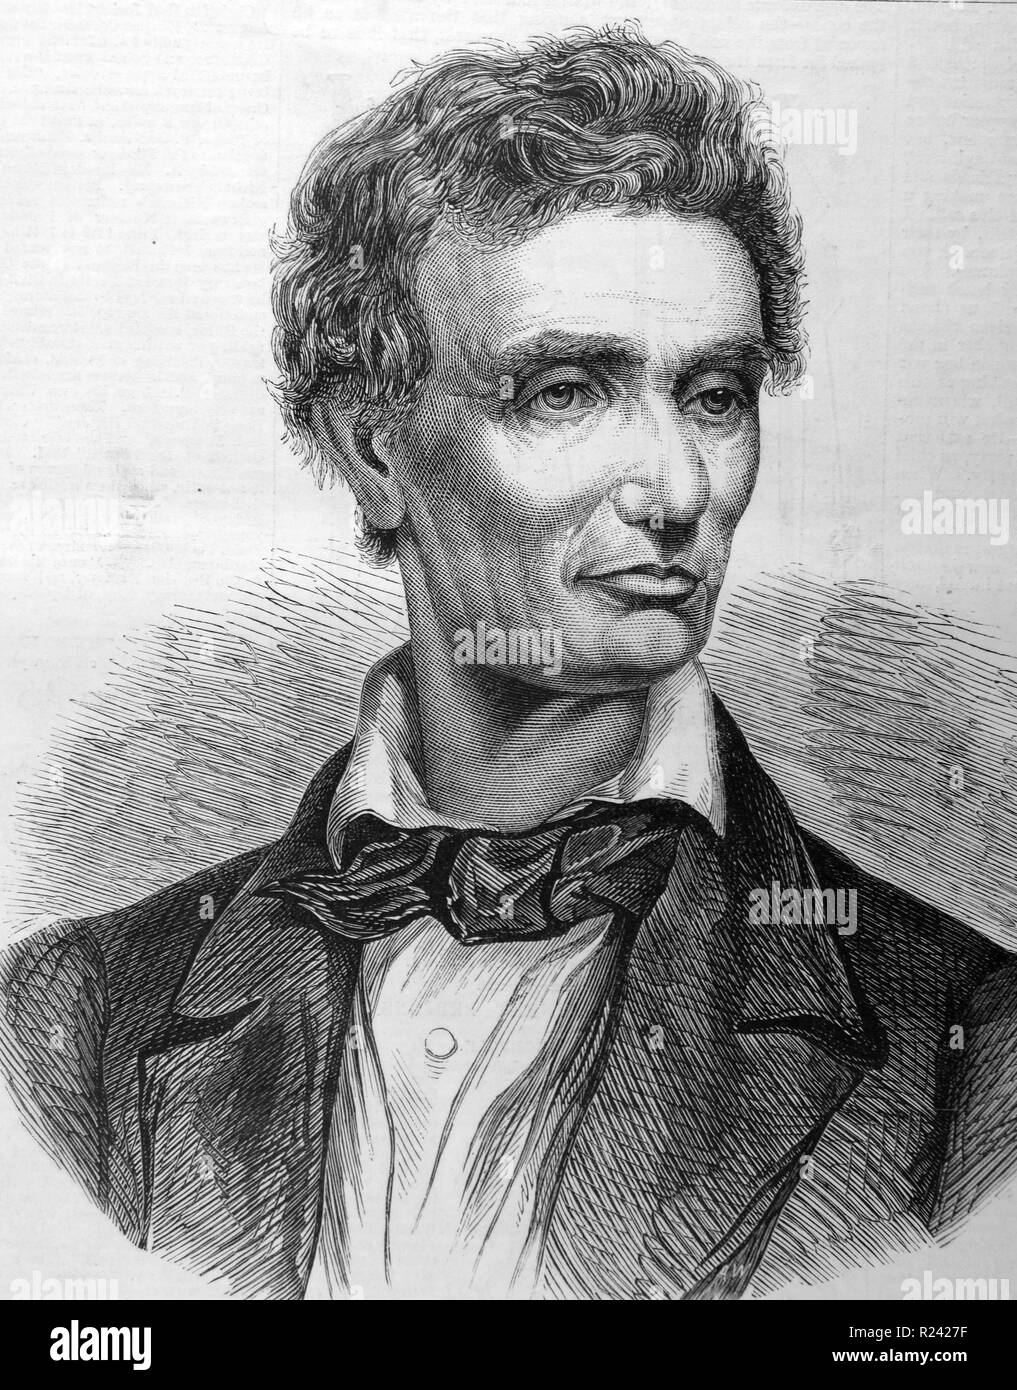 Kupferstich von Abraham Lincoln (1809-1865), Illinois, Präsidenten der Vereinigten Staaten. Vom 1860 Stockfoto